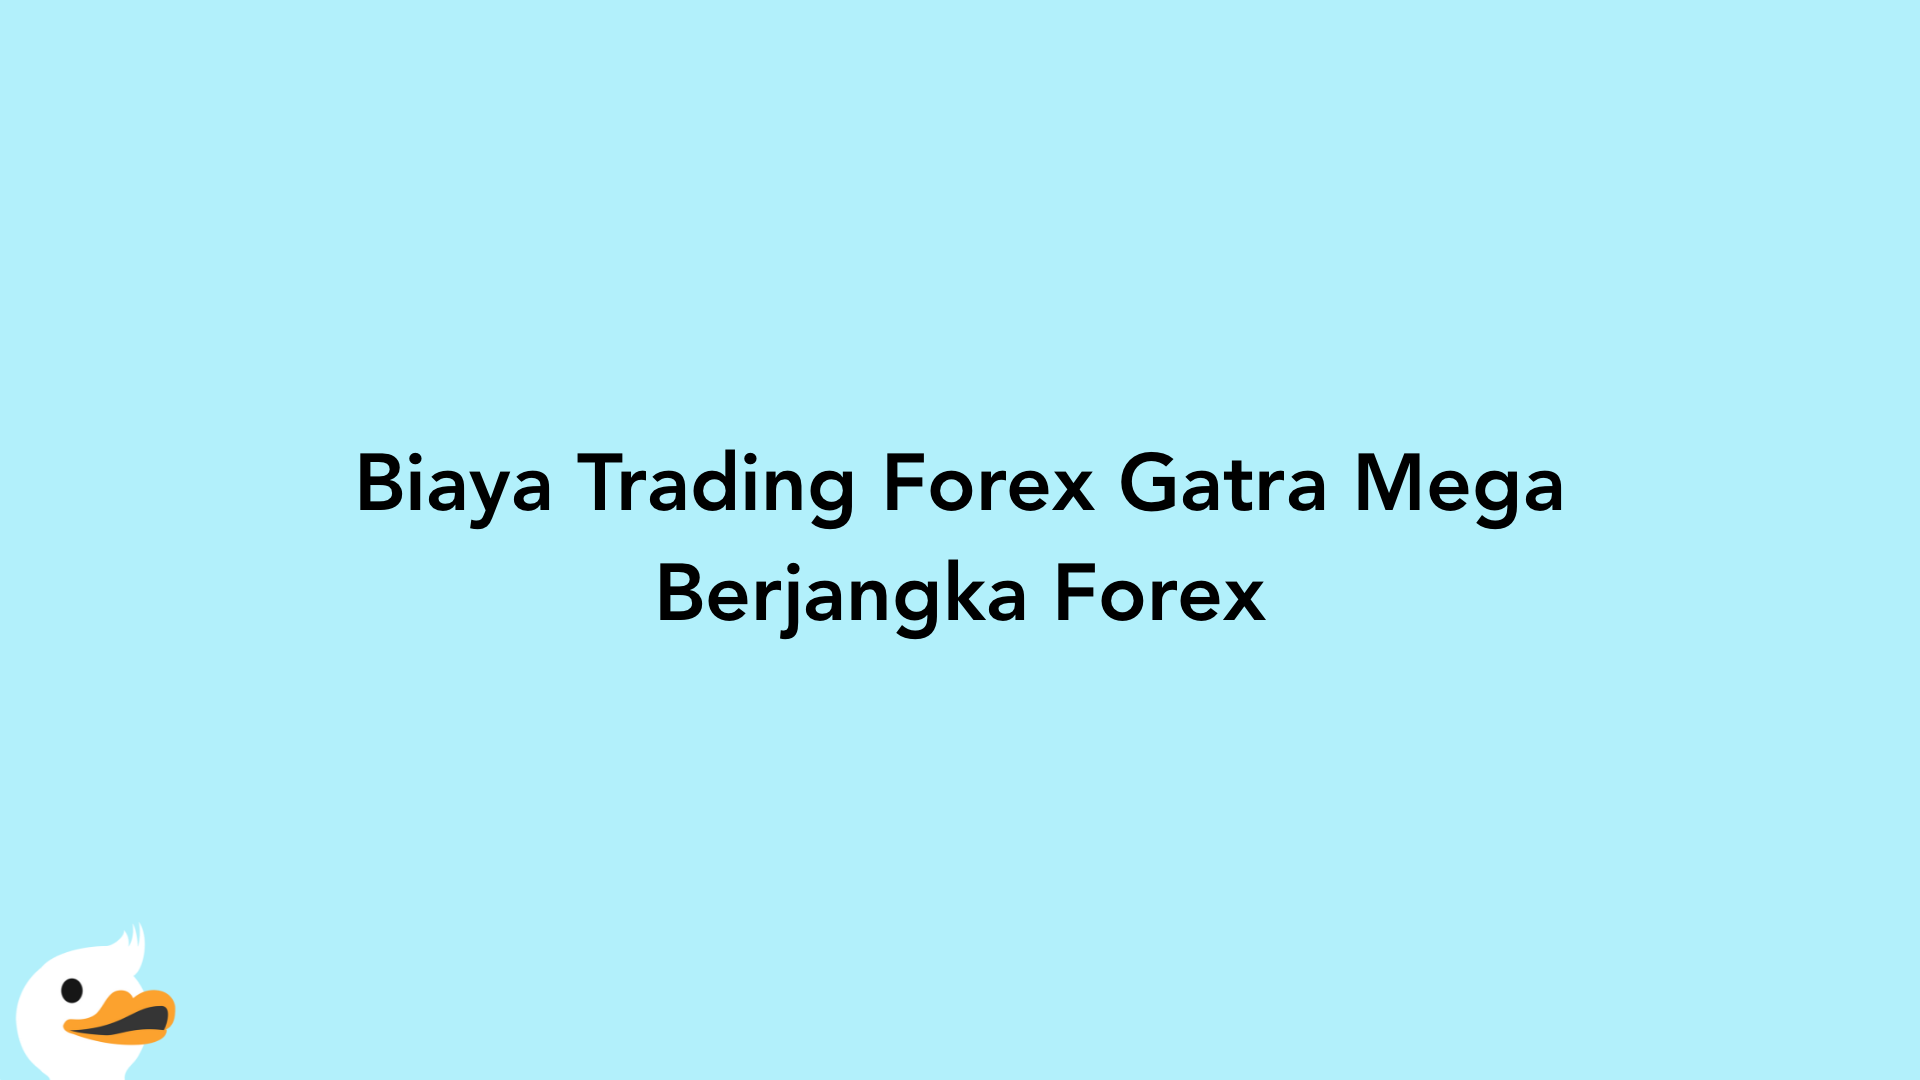 Biaya Trading Forex Gatra Mega Berjangka Forex